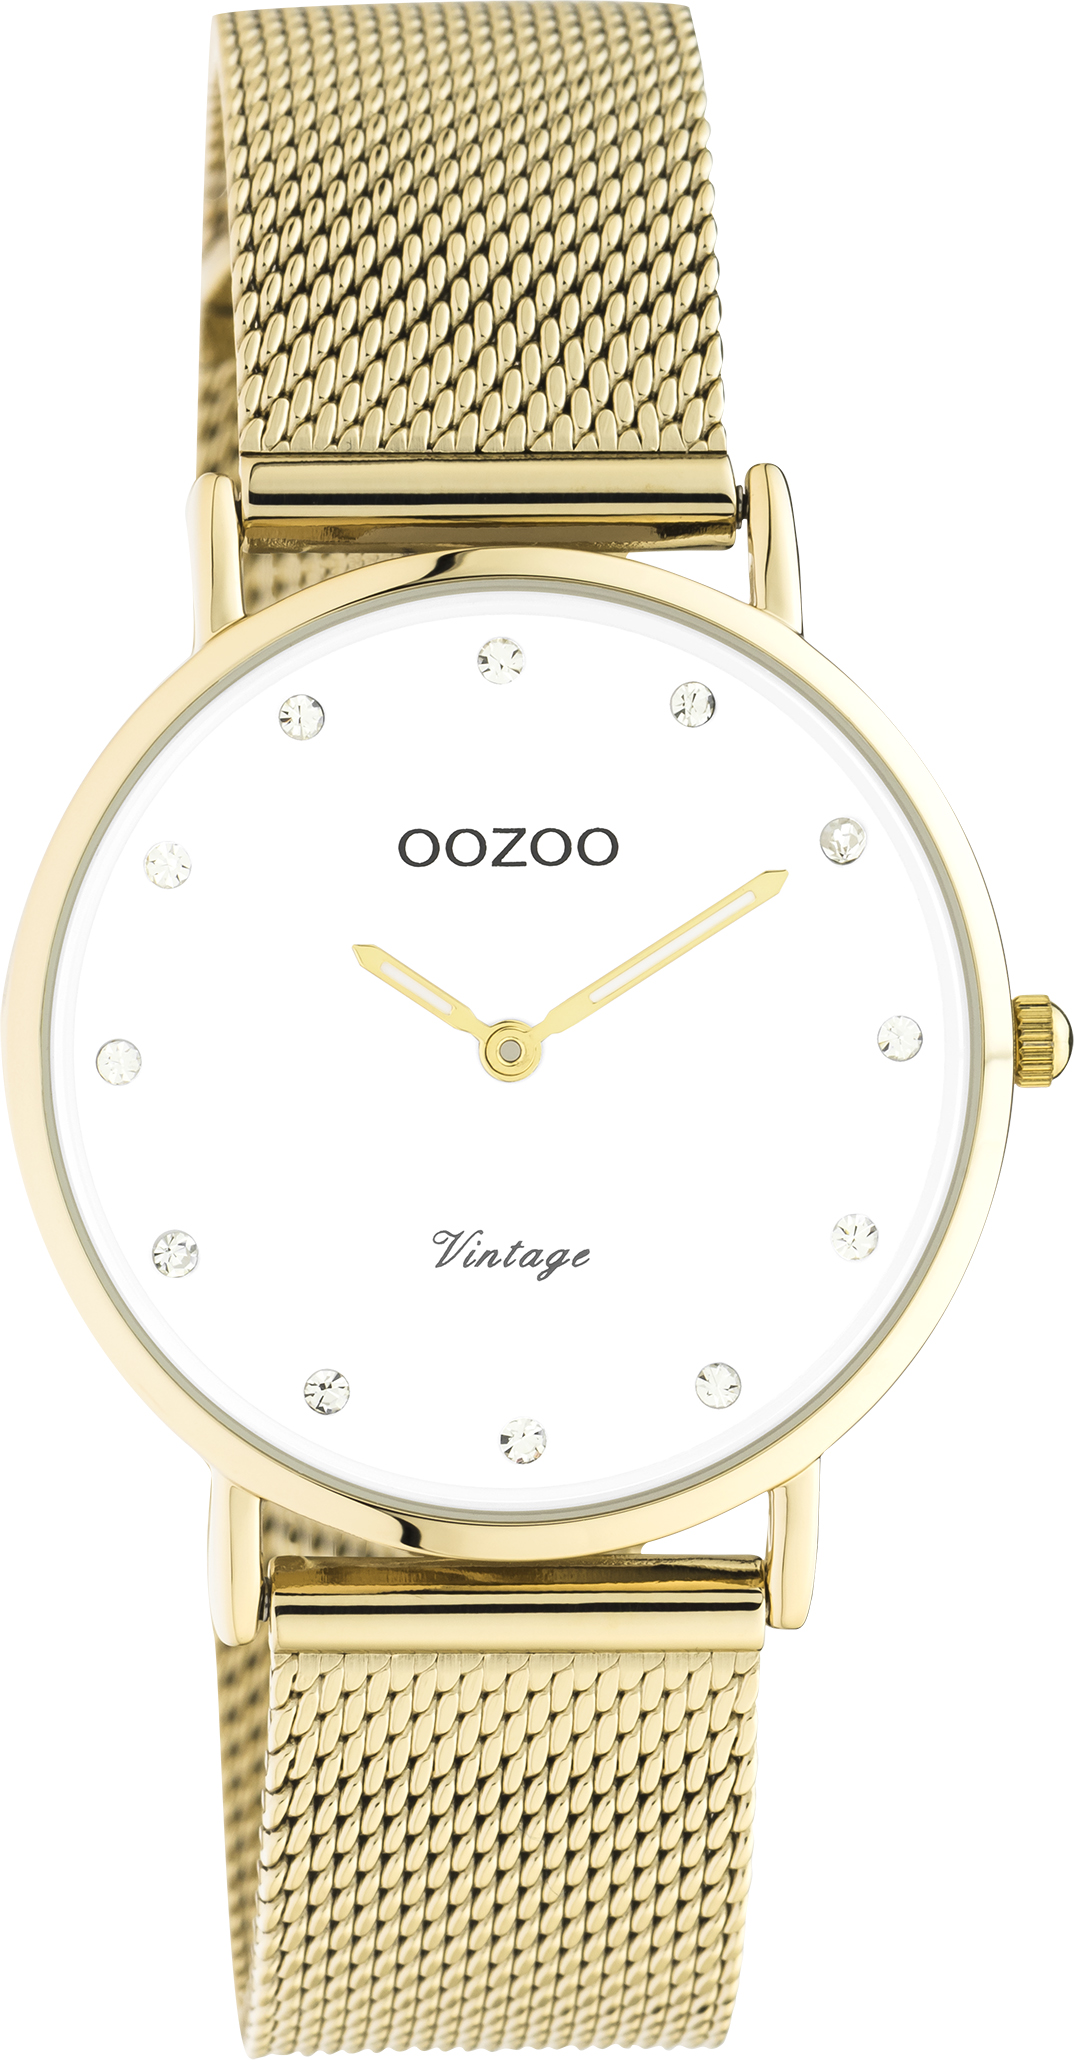 Ρολόι OOZOO Vintage - C20241 χρυσό με διάμετρο κάσας 32mm και μεταλλικό μπρασελέ. Κορυφαία ποιότητα και μοναδική τιμή. Ανακάλυψέ το στο eidolo.gr!